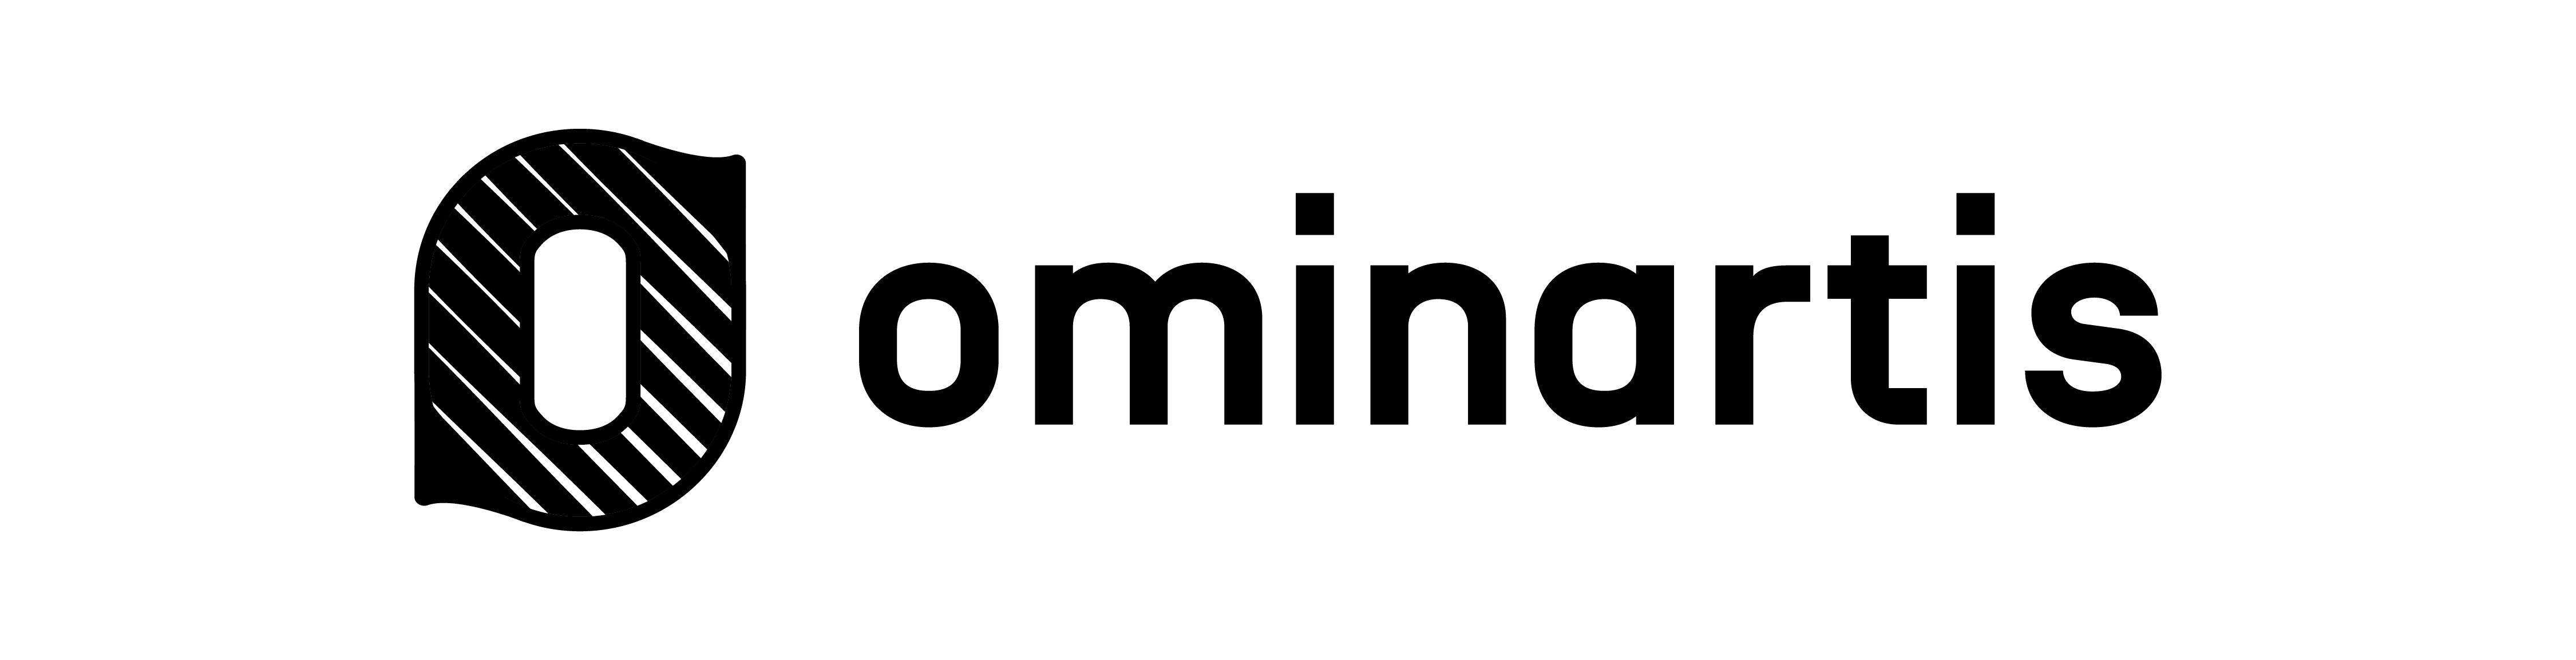 Logo ominartis texte / icones